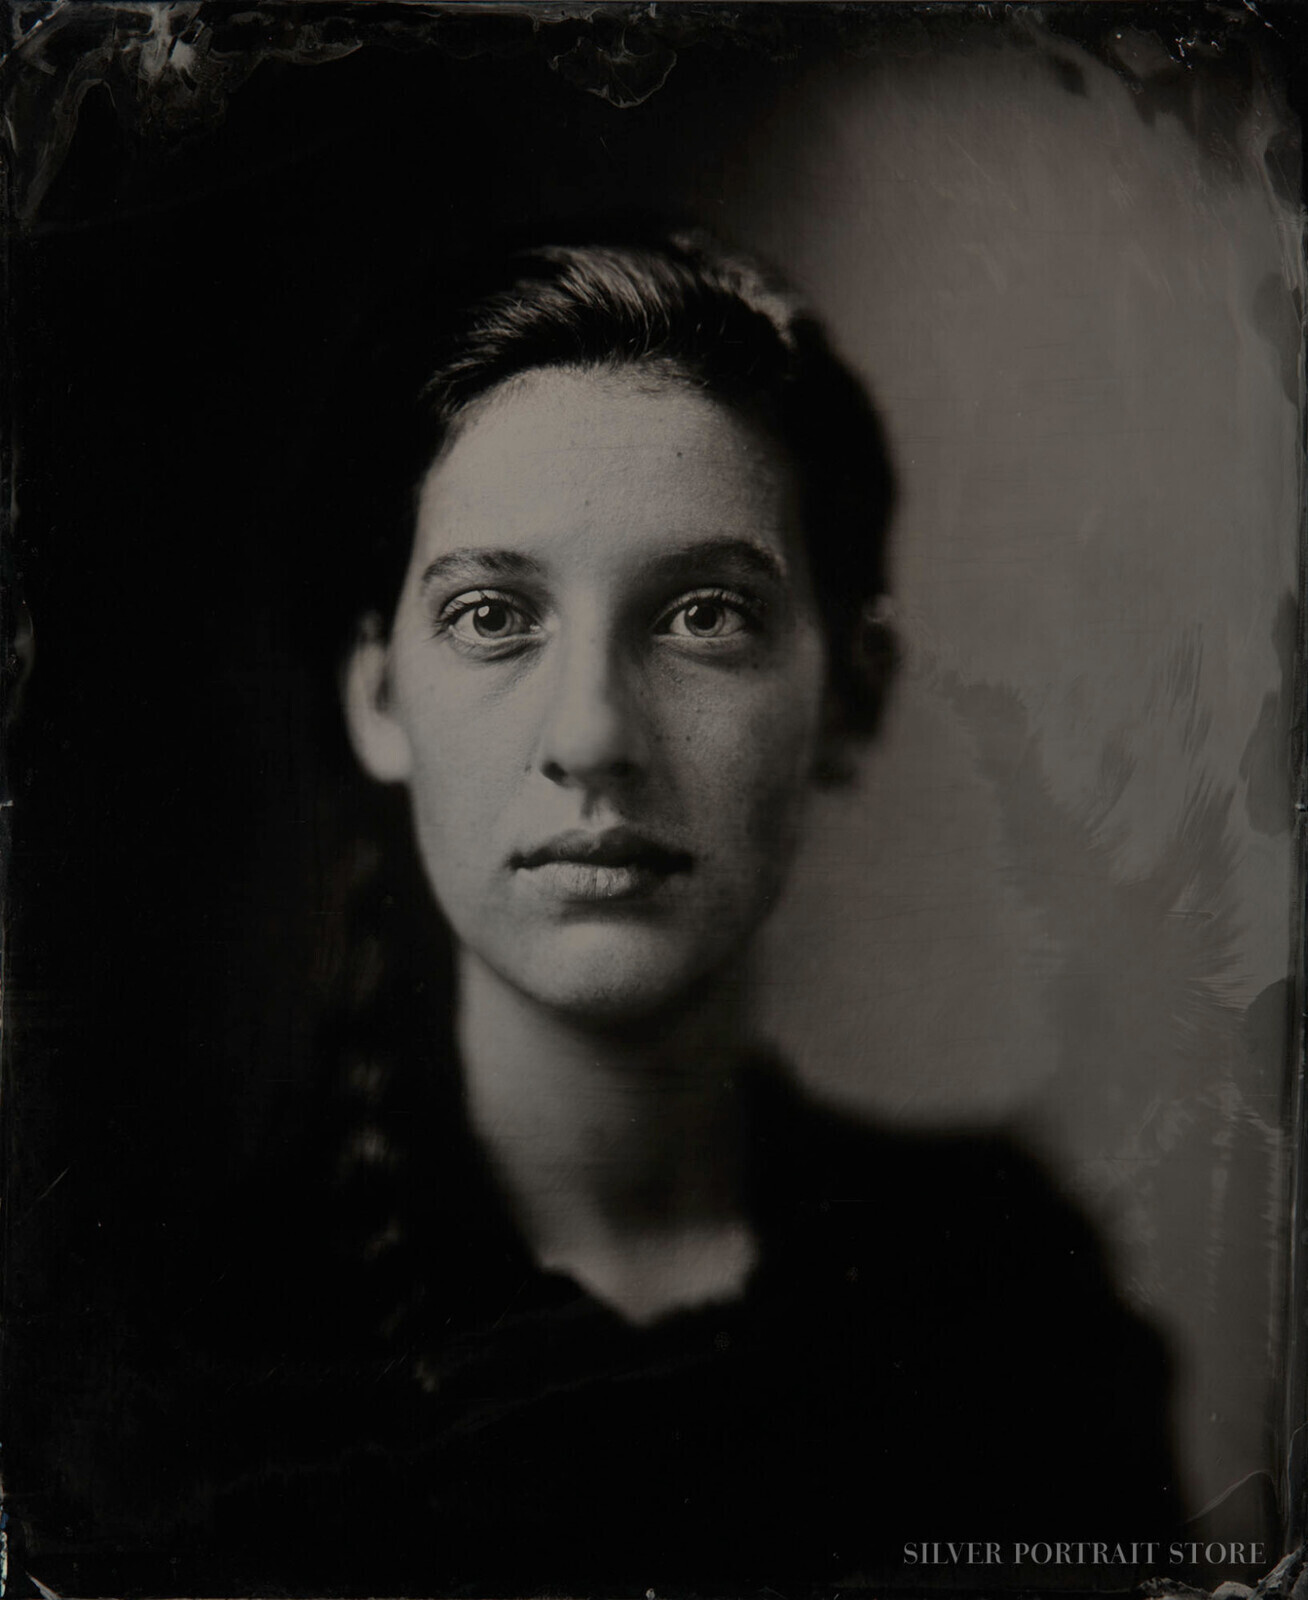 Lois close-Silver Portrait Store-Wet plate collodion-Tintype 35 x 43 cm.